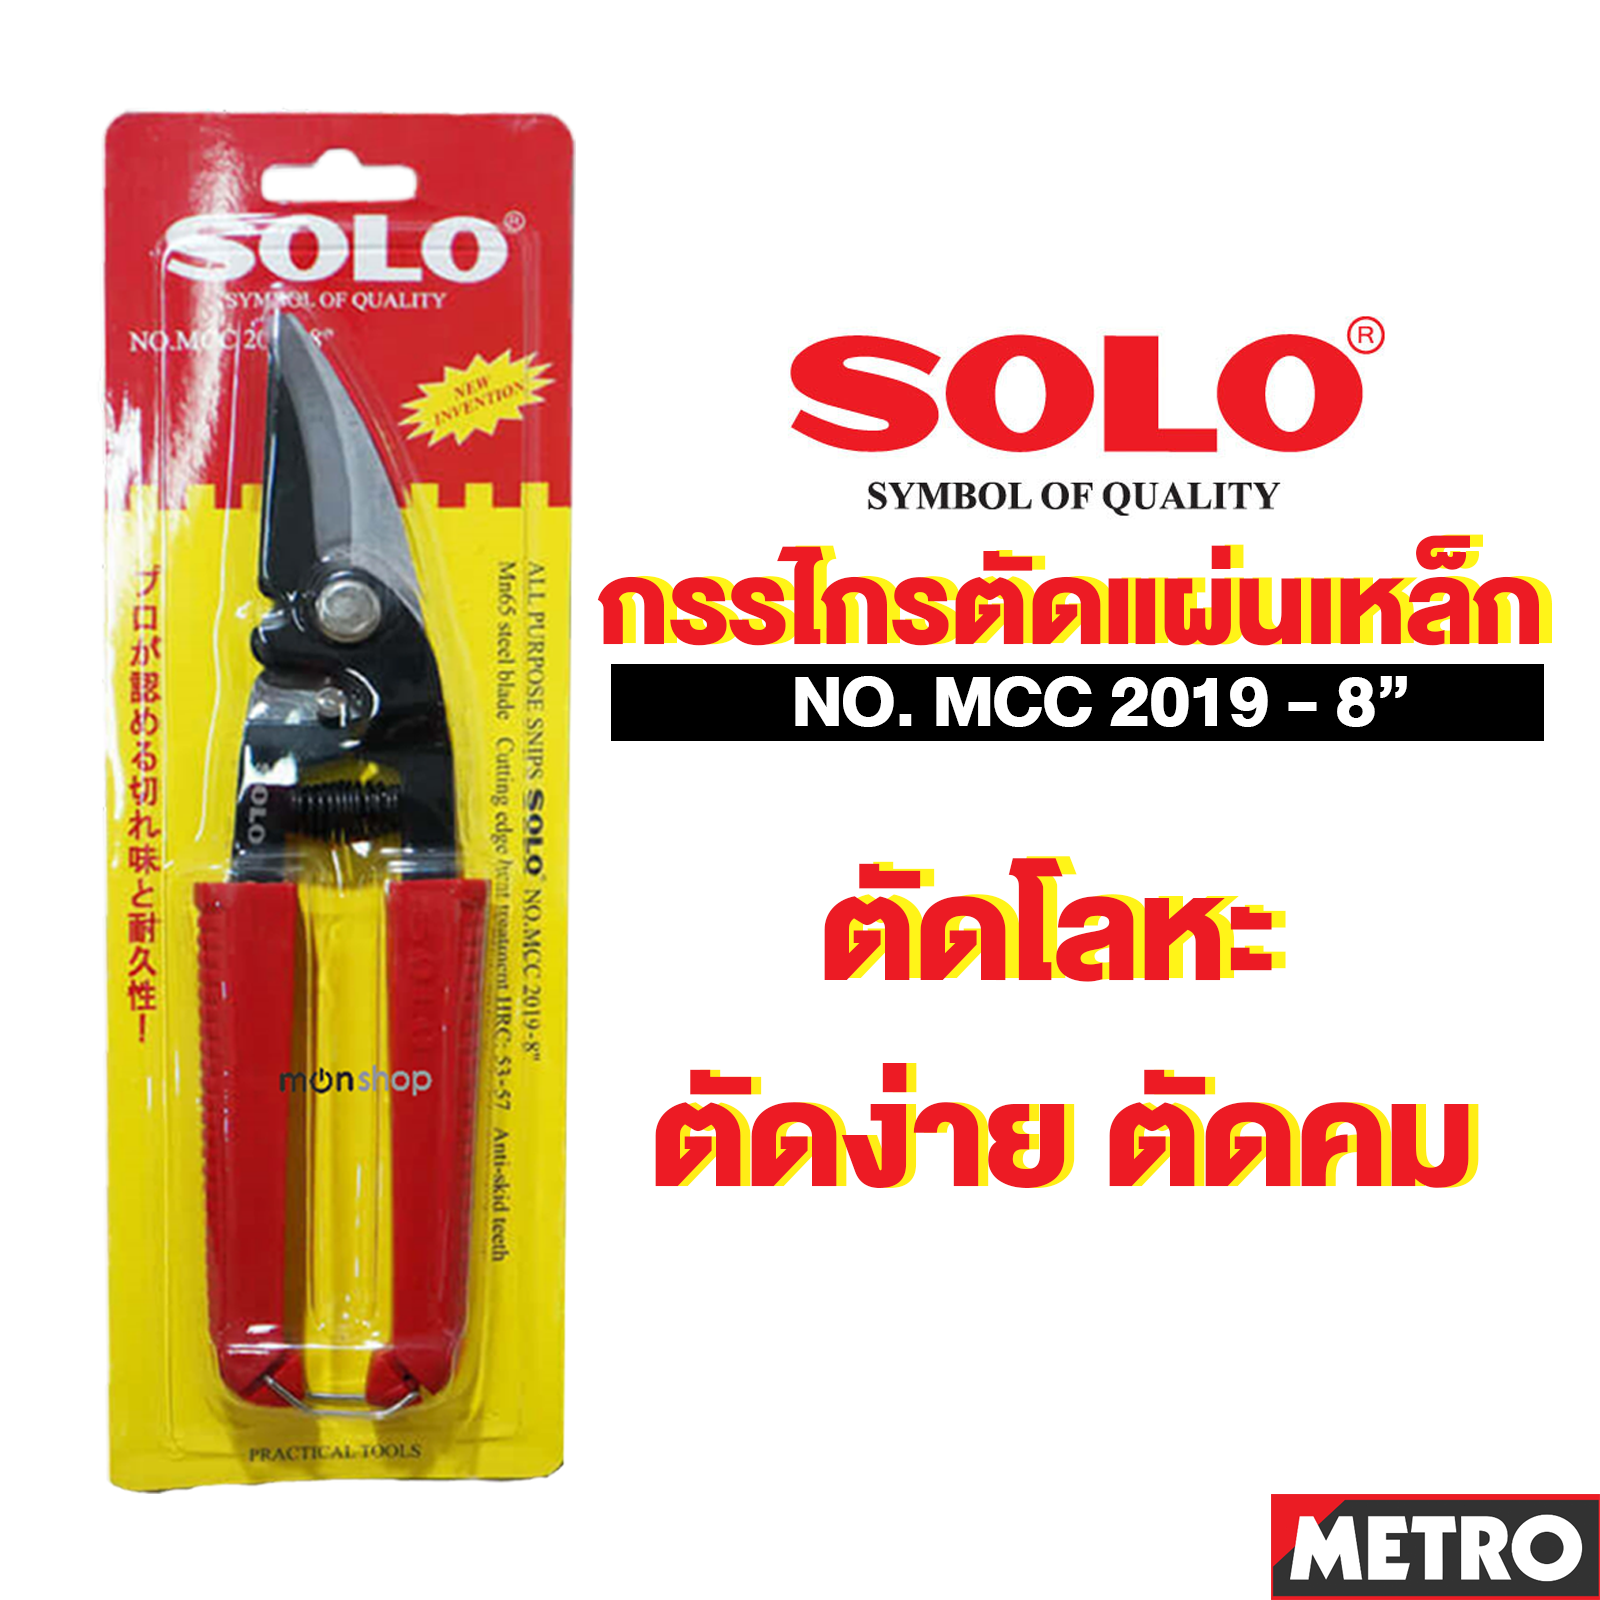 ( MET10 7 ) Solo กรรไกรตัดแผ่นเหล็ก กรรไกรตัดสังกะสี คีมตัดแผ่นเหล็ก คีมตัดสังกะสี ขนาด 8 นิ้ว ปากโค้ง รุ่น MCC 2019-8 ตัดง่าย คม ทนมากby METRO